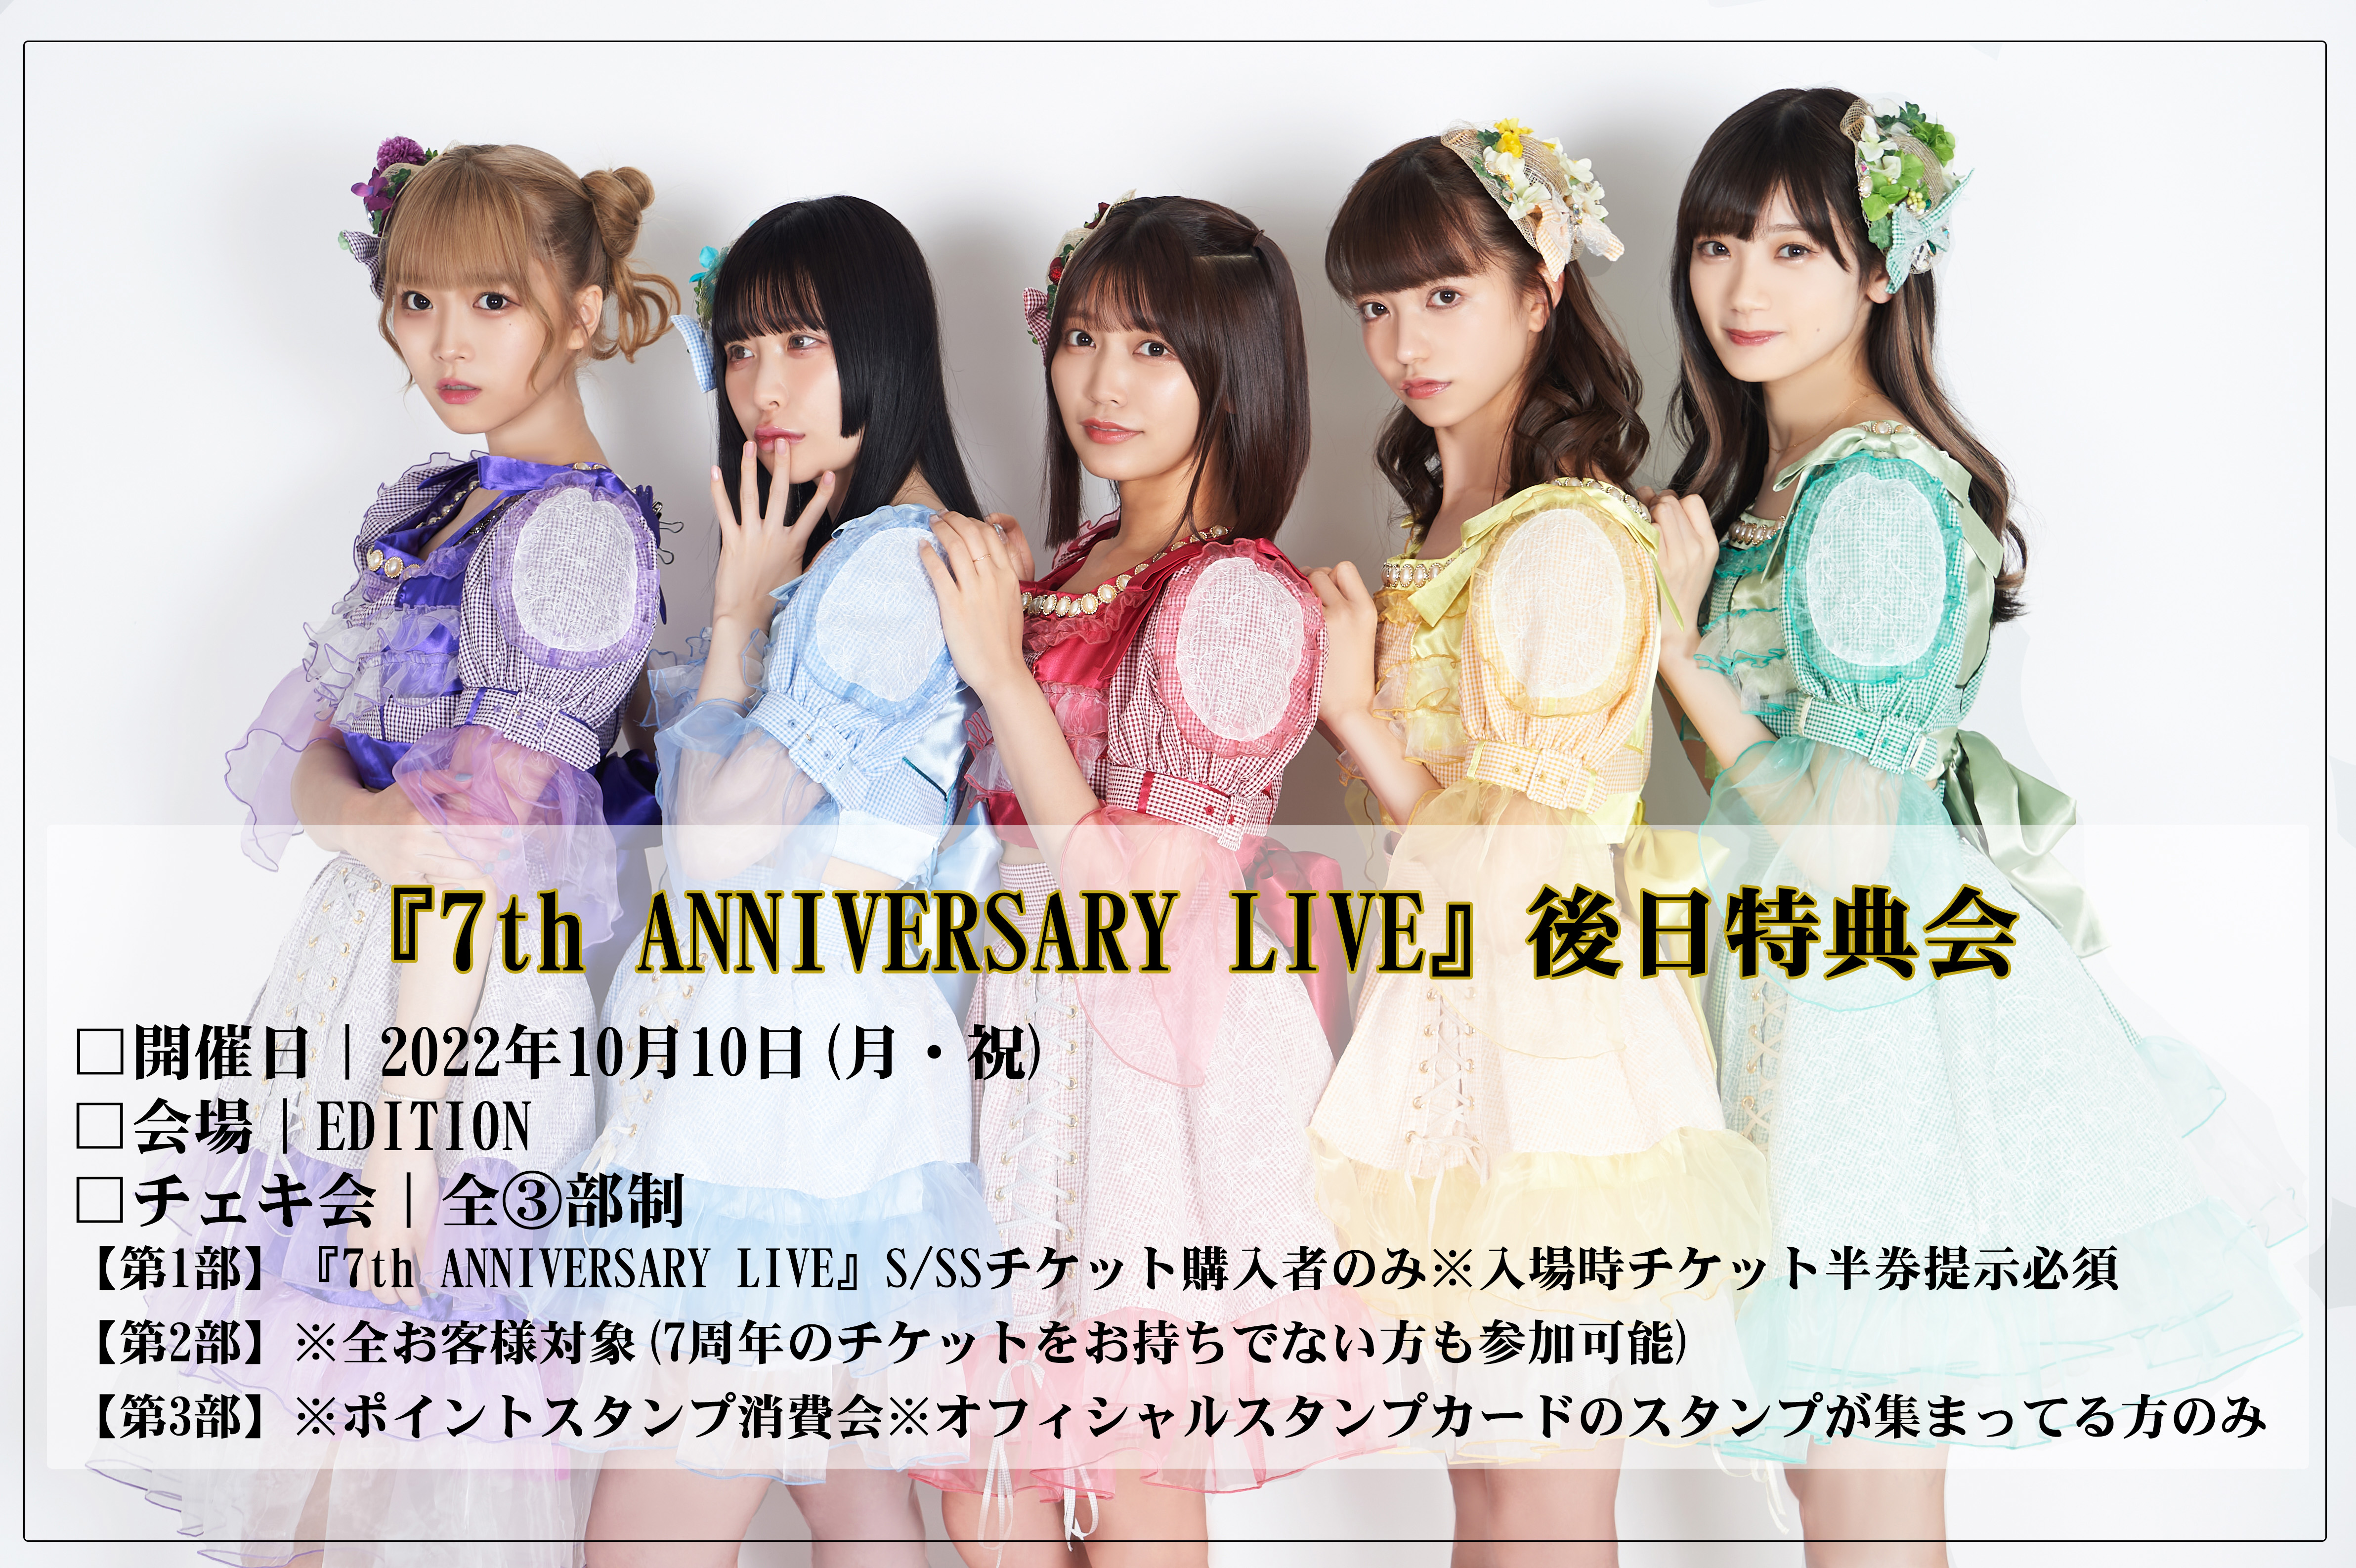 【2部】2022年10月10日(月・祝)『7th ANNIVERSARY LIVE』後日特典会